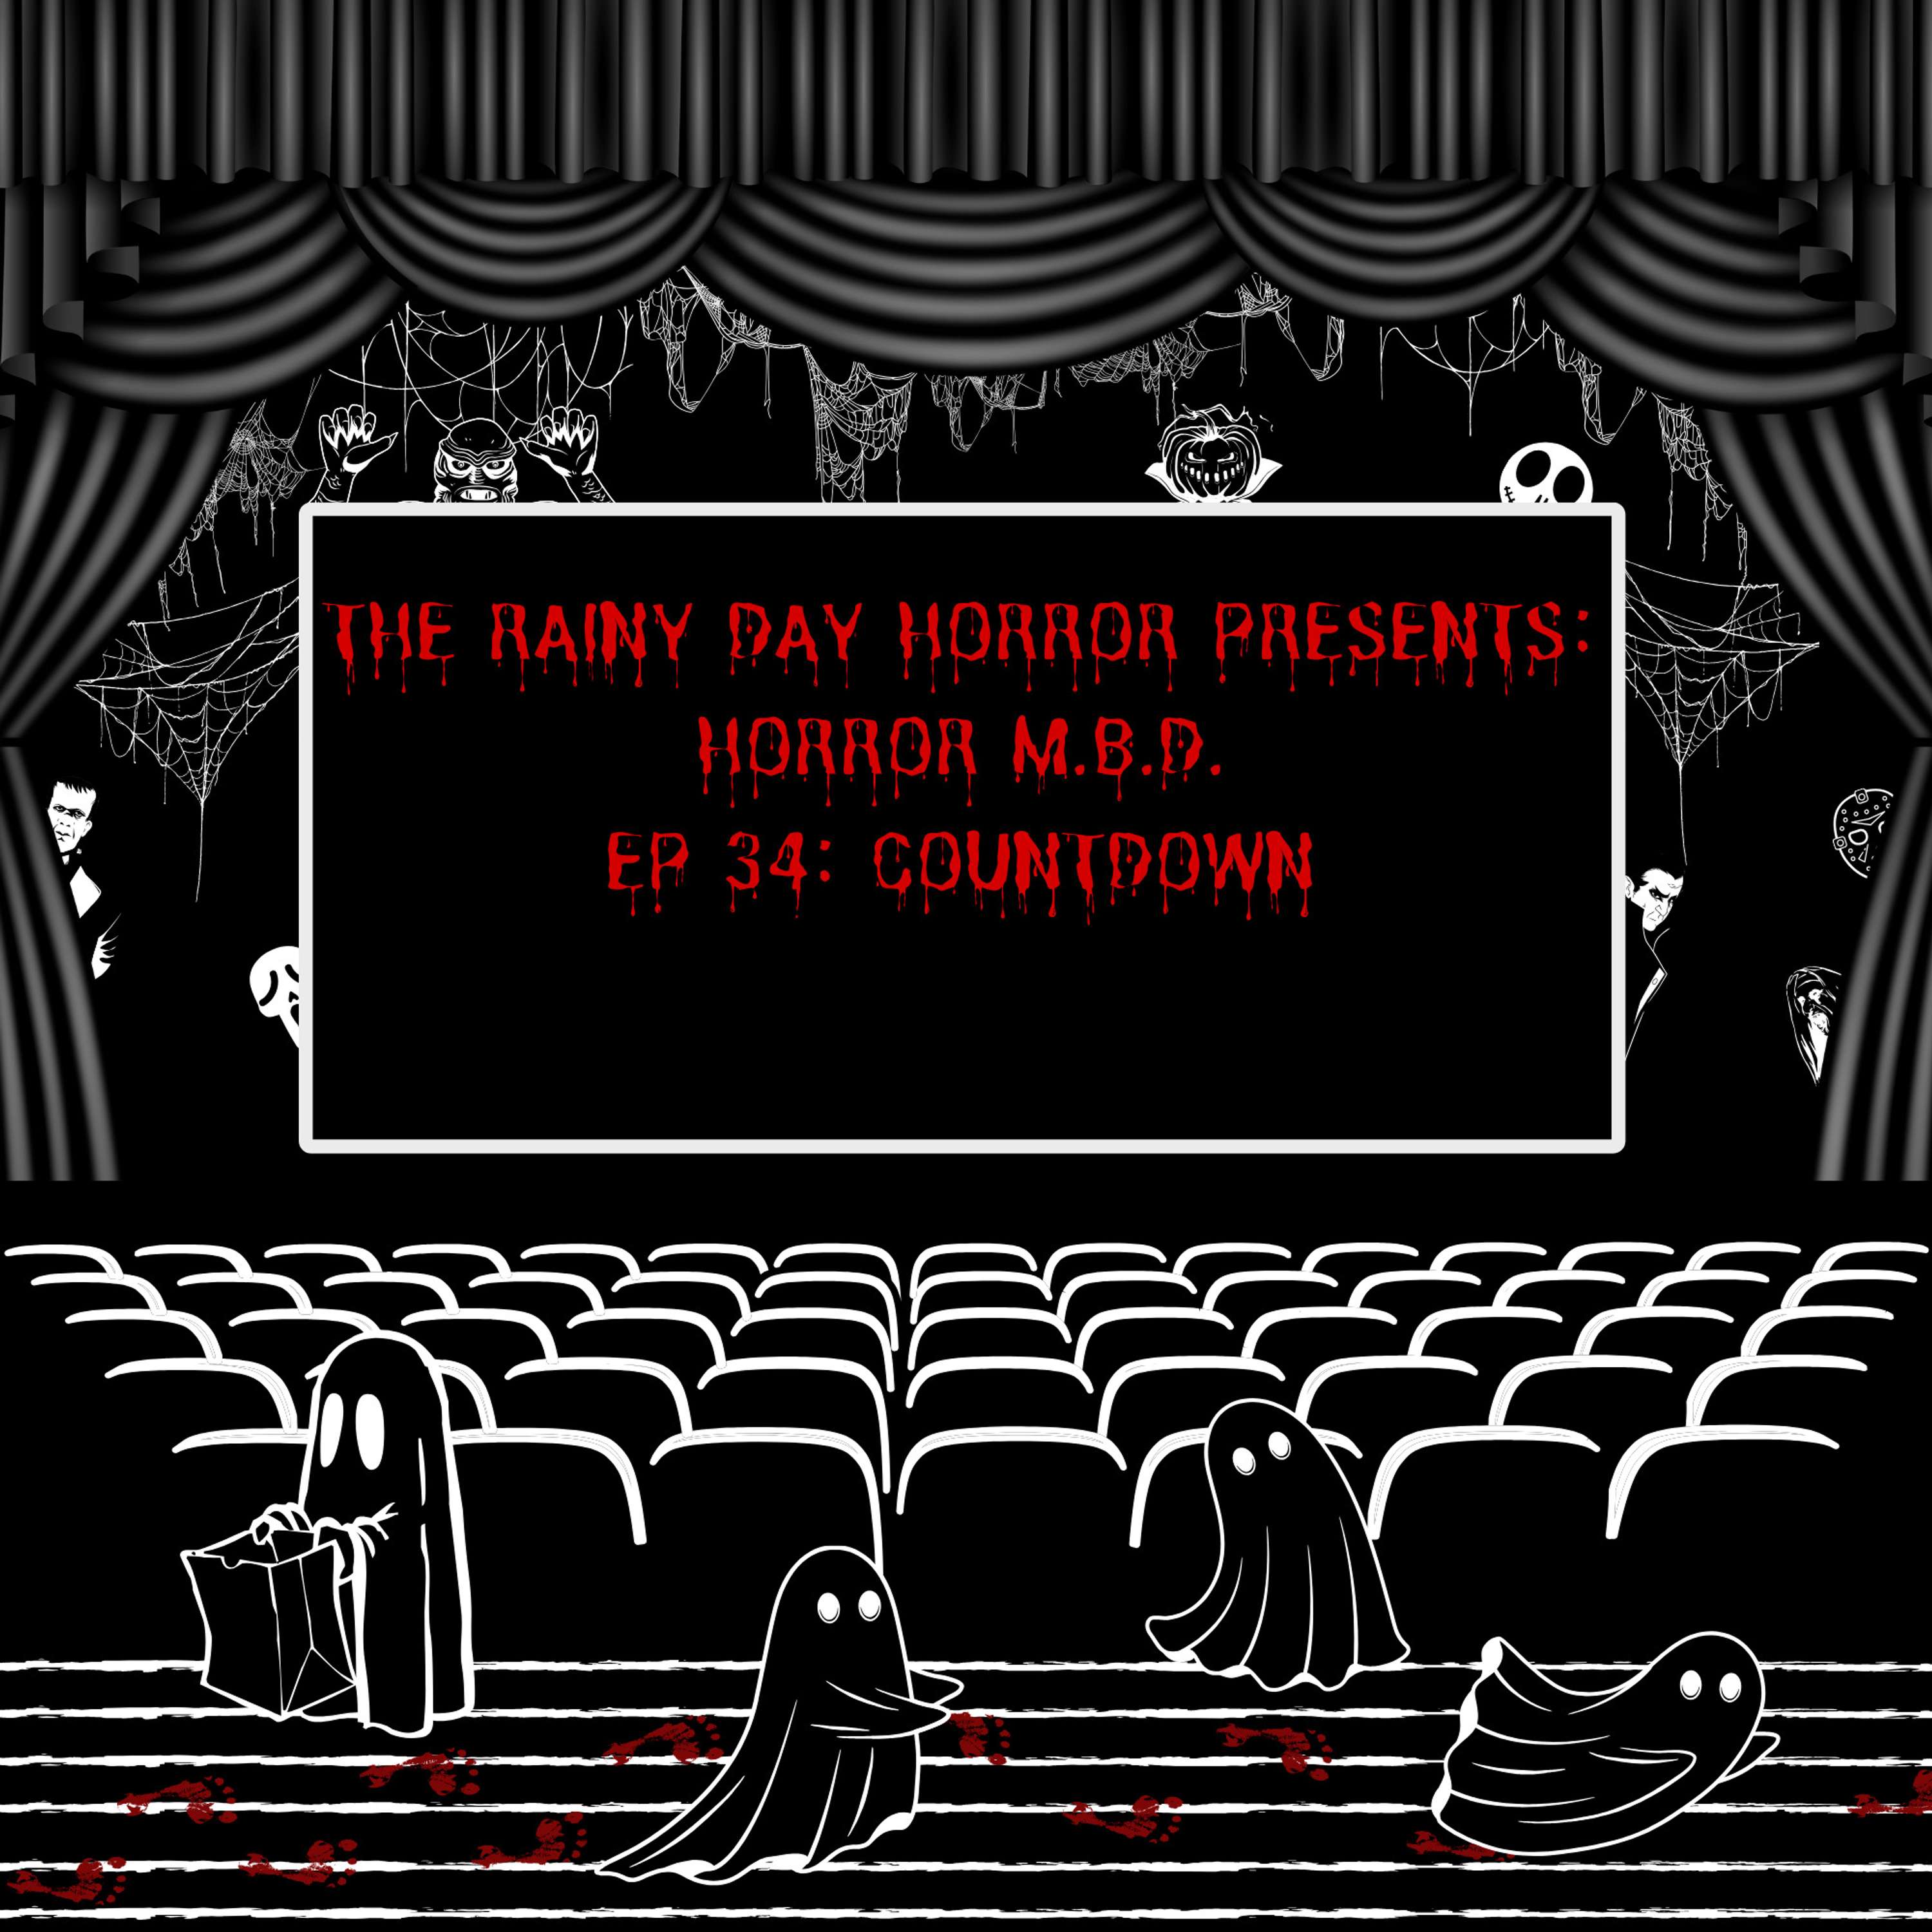 Horror M.B.D. Ep 34: Countdown